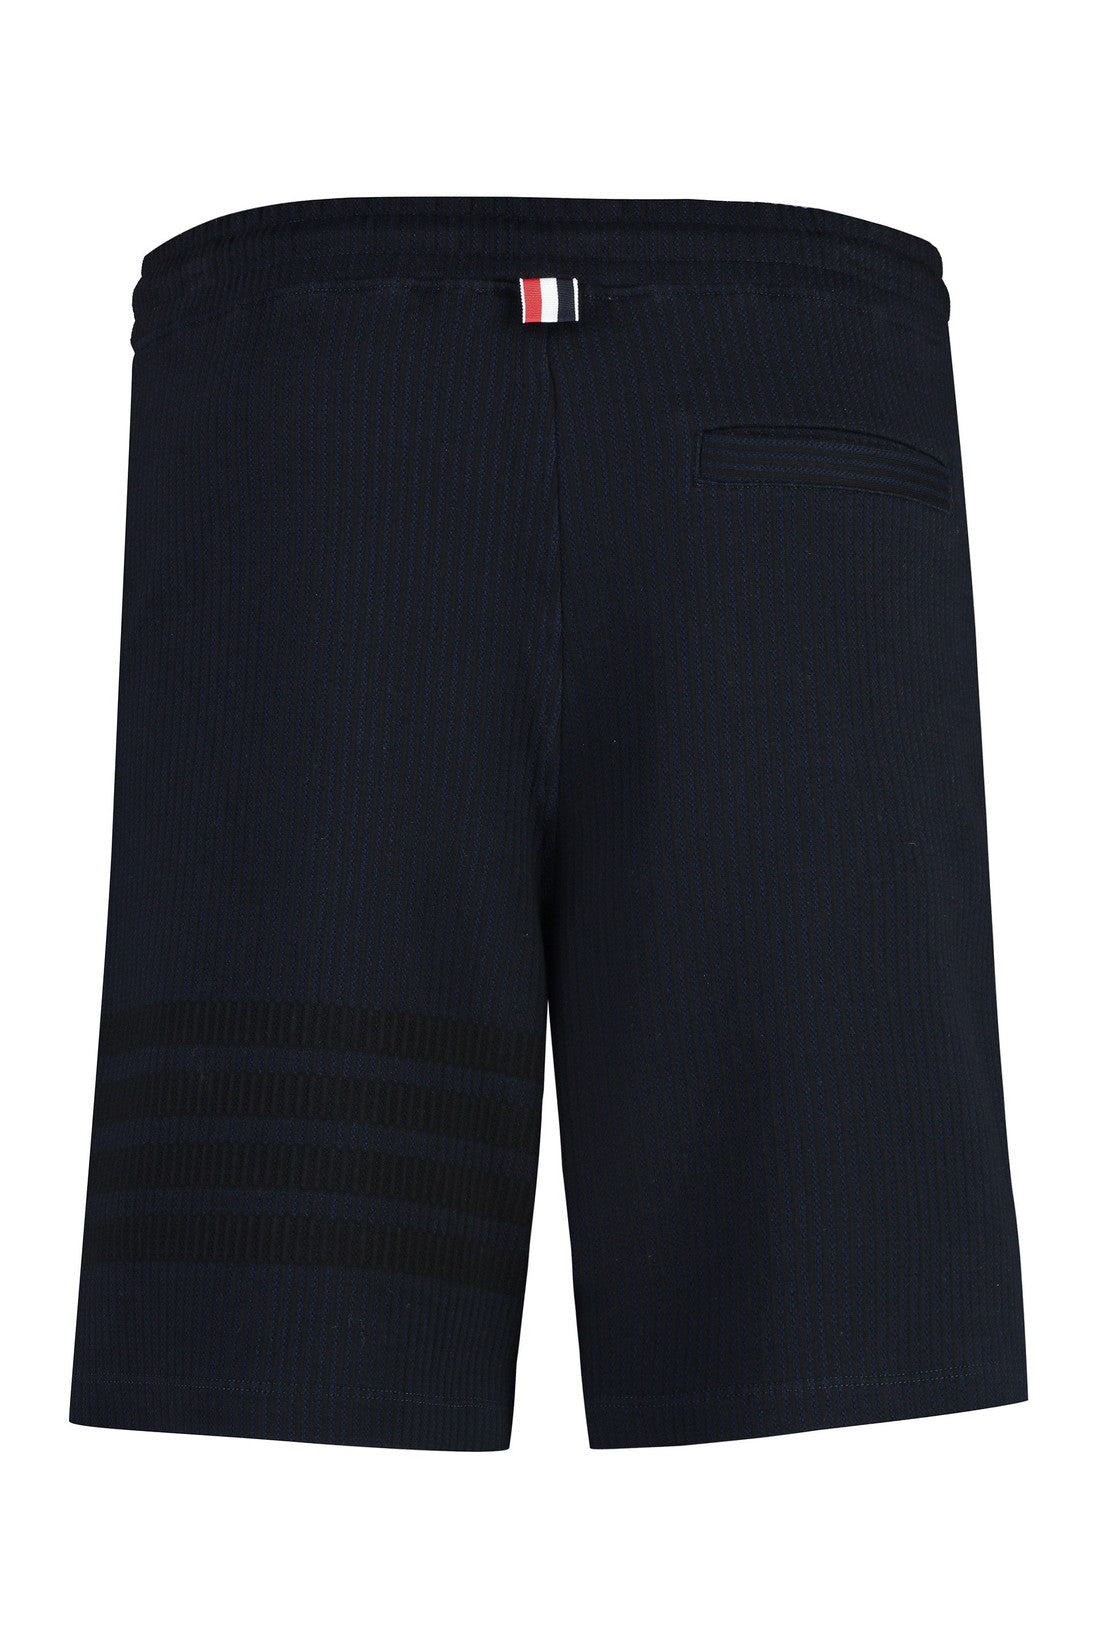 Thom Browne-OUTLET-SALE-Cotton bermuda shorts-ARCHIVIST